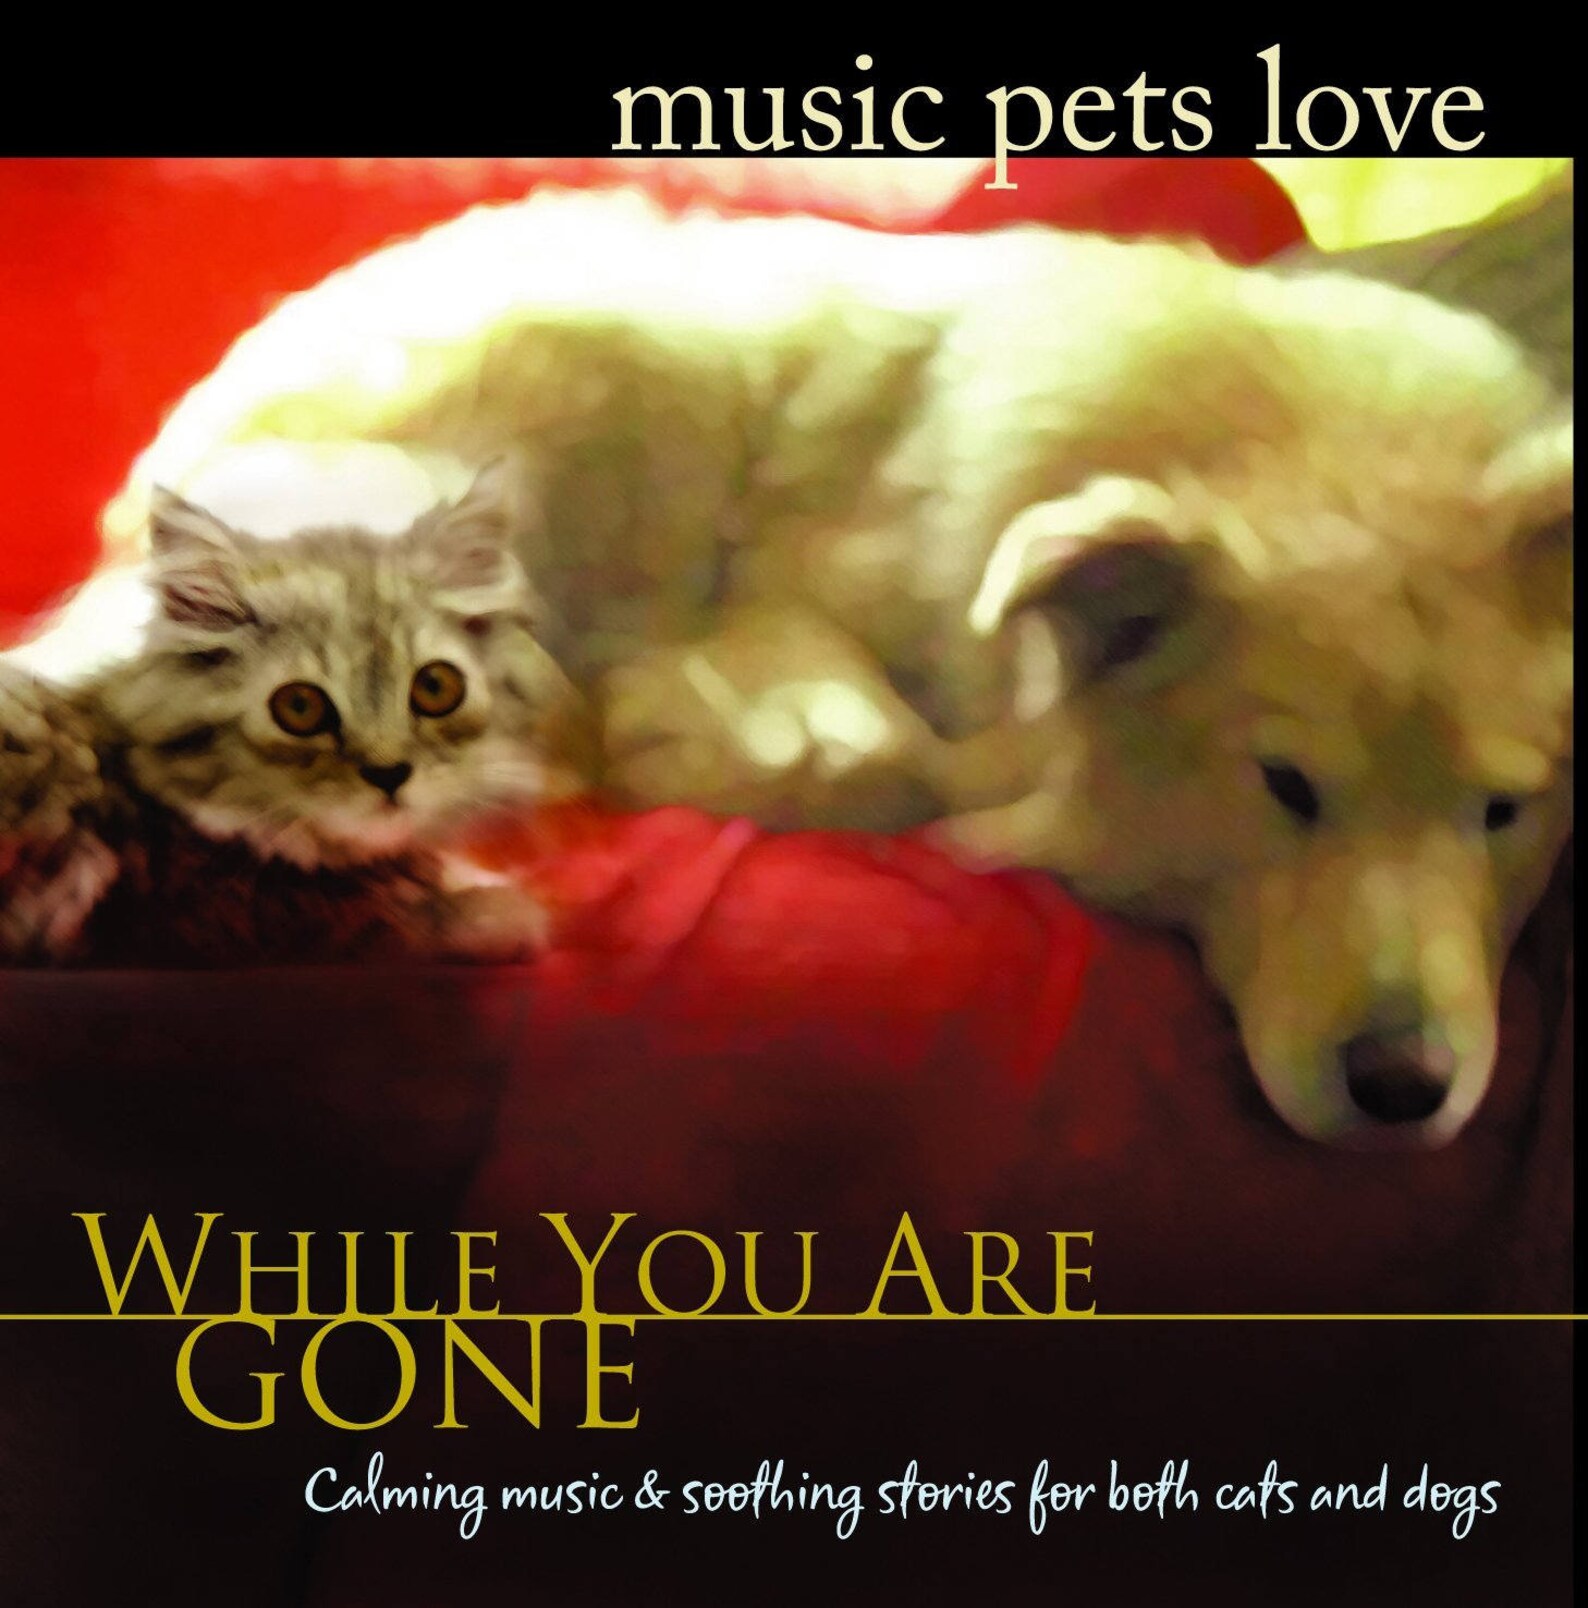 Pet песня. Pets offer Unconditional Love. Rock musicians with Pets. Music pets